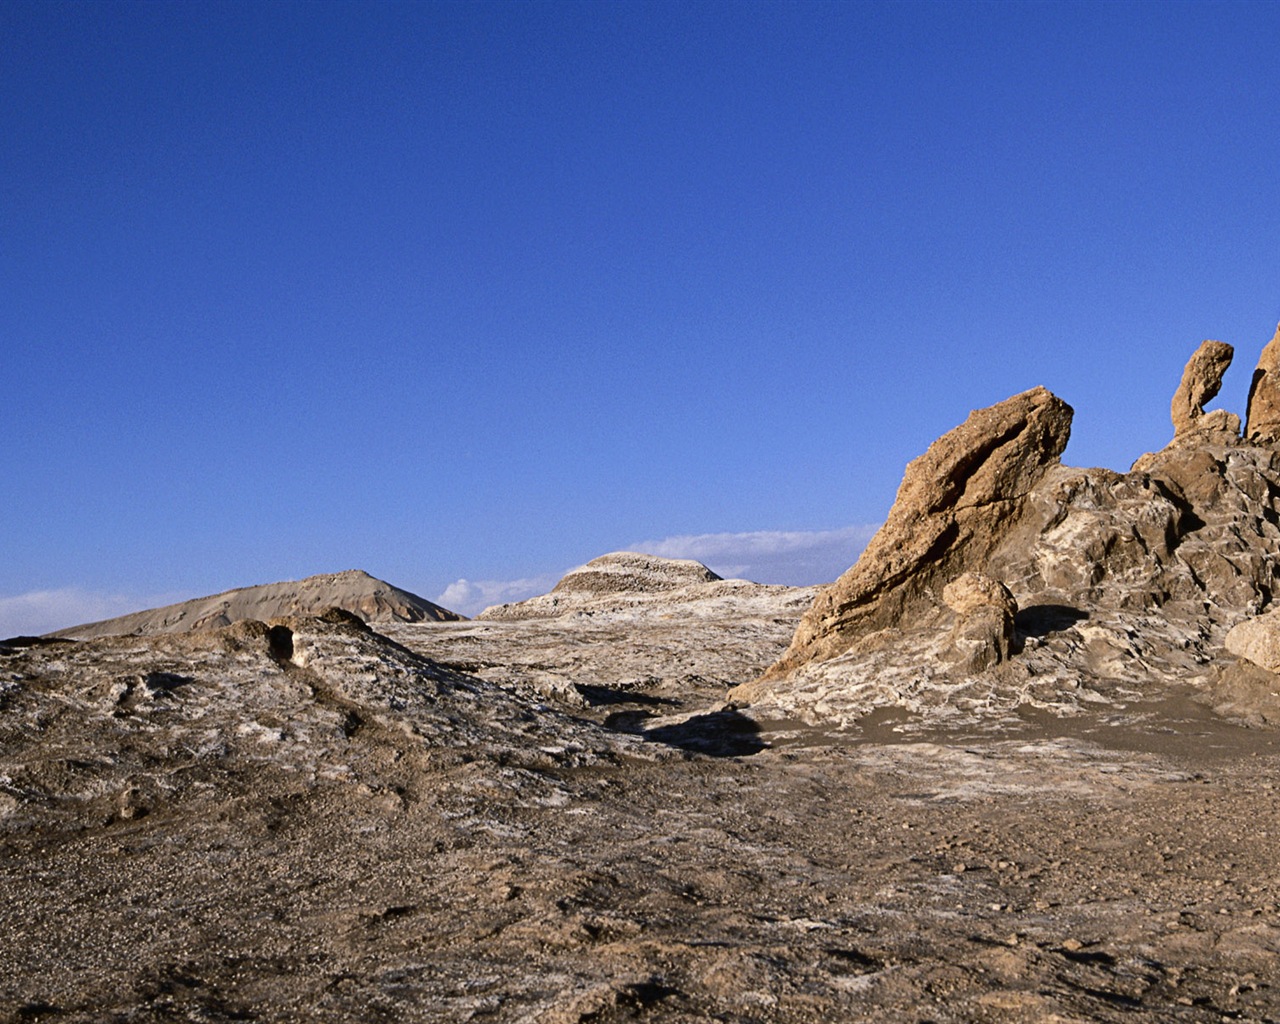 Les déserts chauds et arides, de Windows 8 fonds d'écran widescreen panoramique #11 - 1280x1024